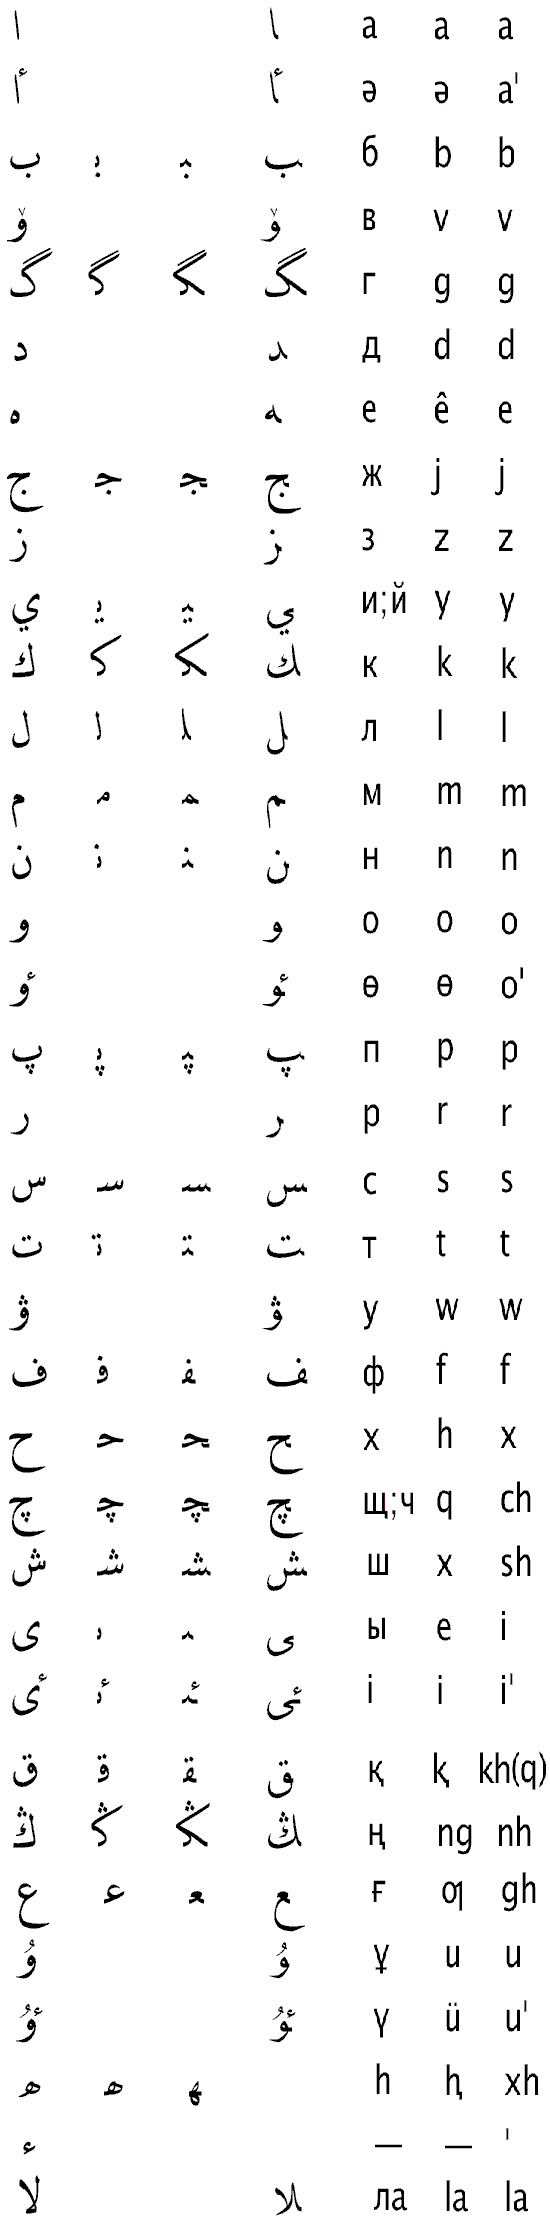 Казахские алфавиты